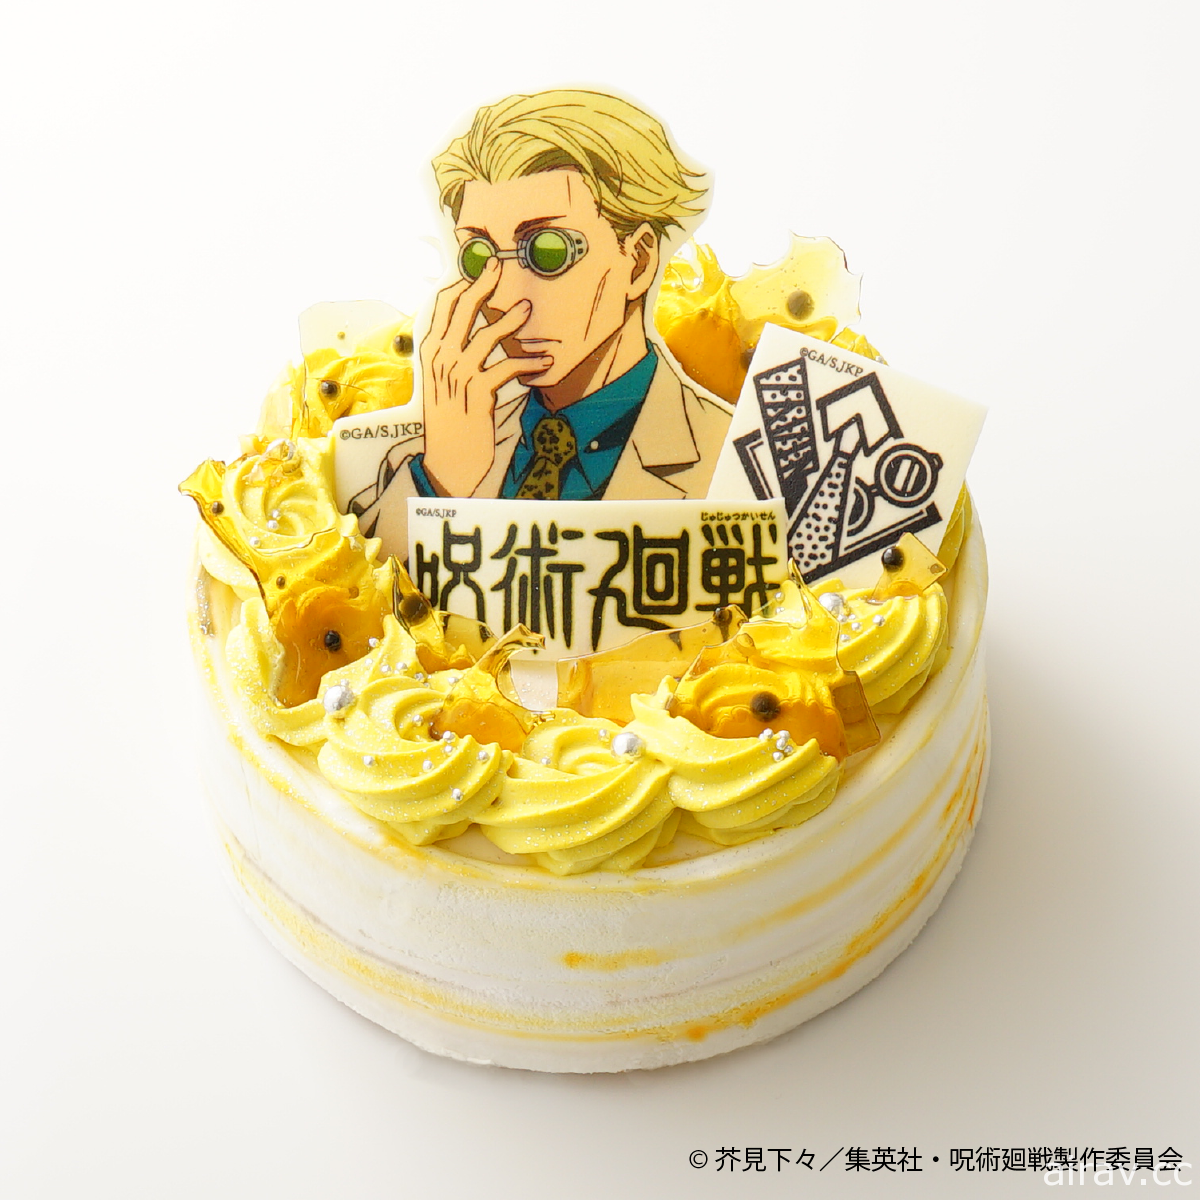 《咒术回战》×Cake.jp 推出“五条悟”与“七海建人”款式蛋糕